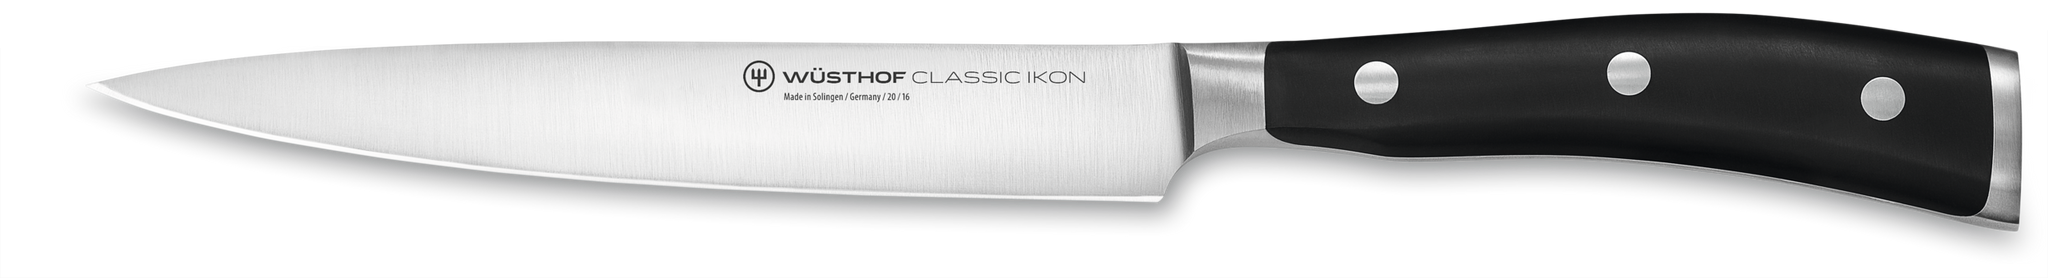 Classic Ikon 7-Piece Knife Block Set